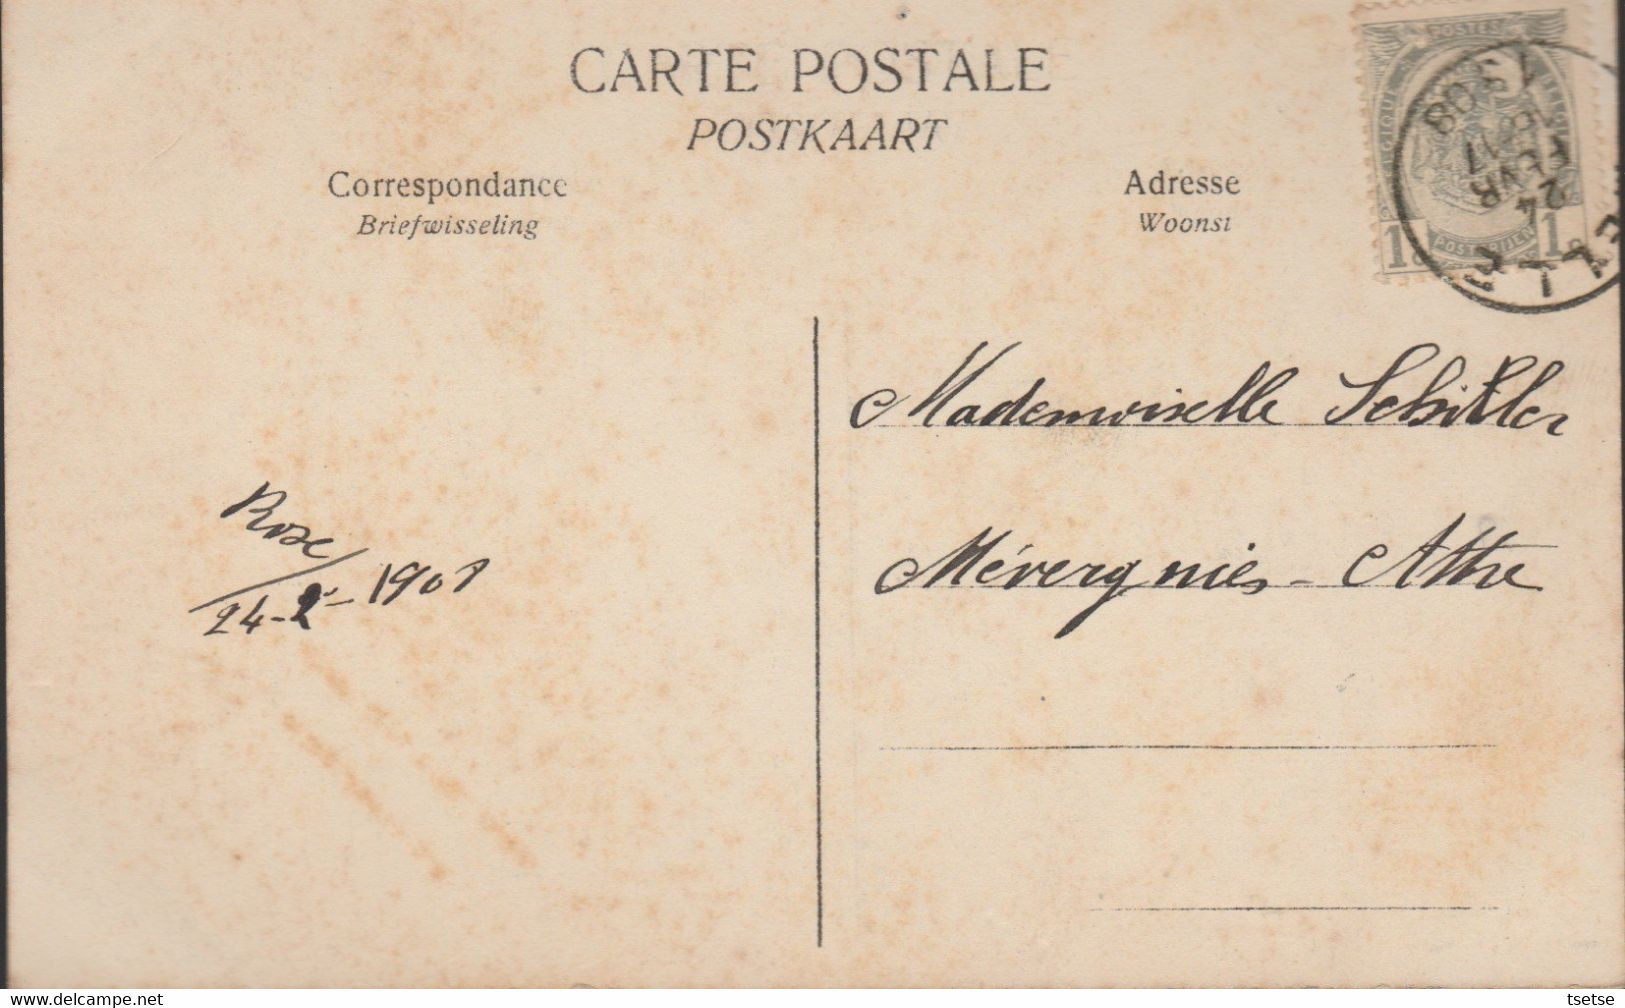 Melle - Château De Mr J. De Potter D'Indoye / Vue De Derrière - 1908 ( Verso Zien ) - Melle